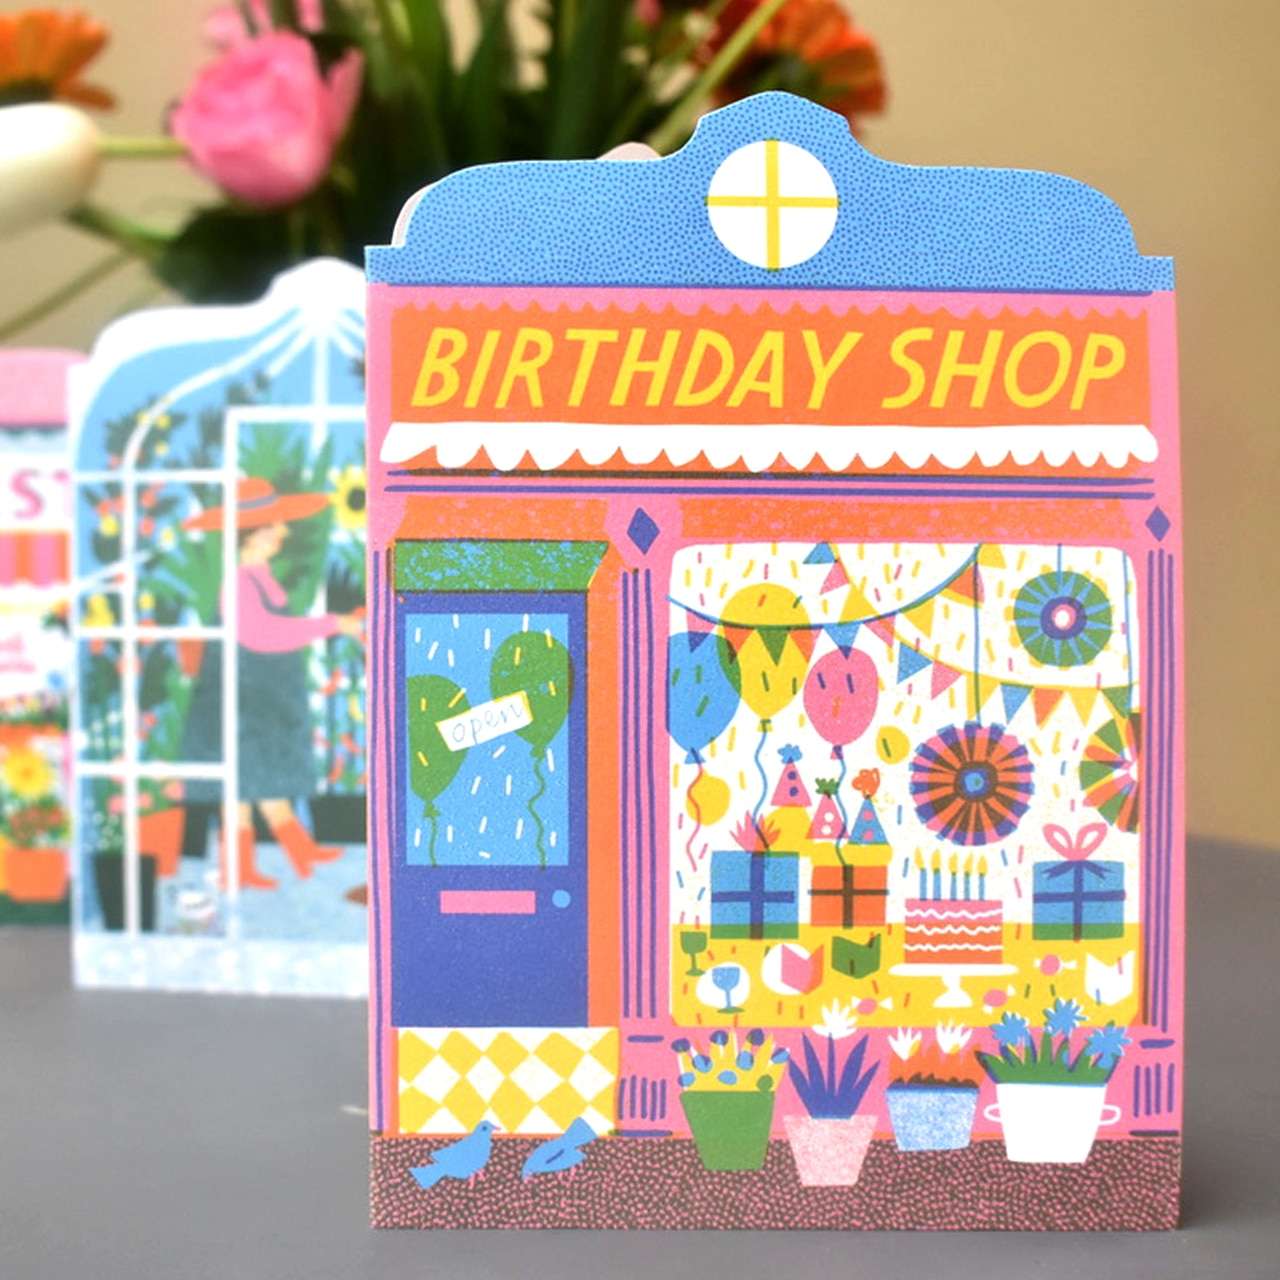 Birthday Shop Die Cut Greetings Card